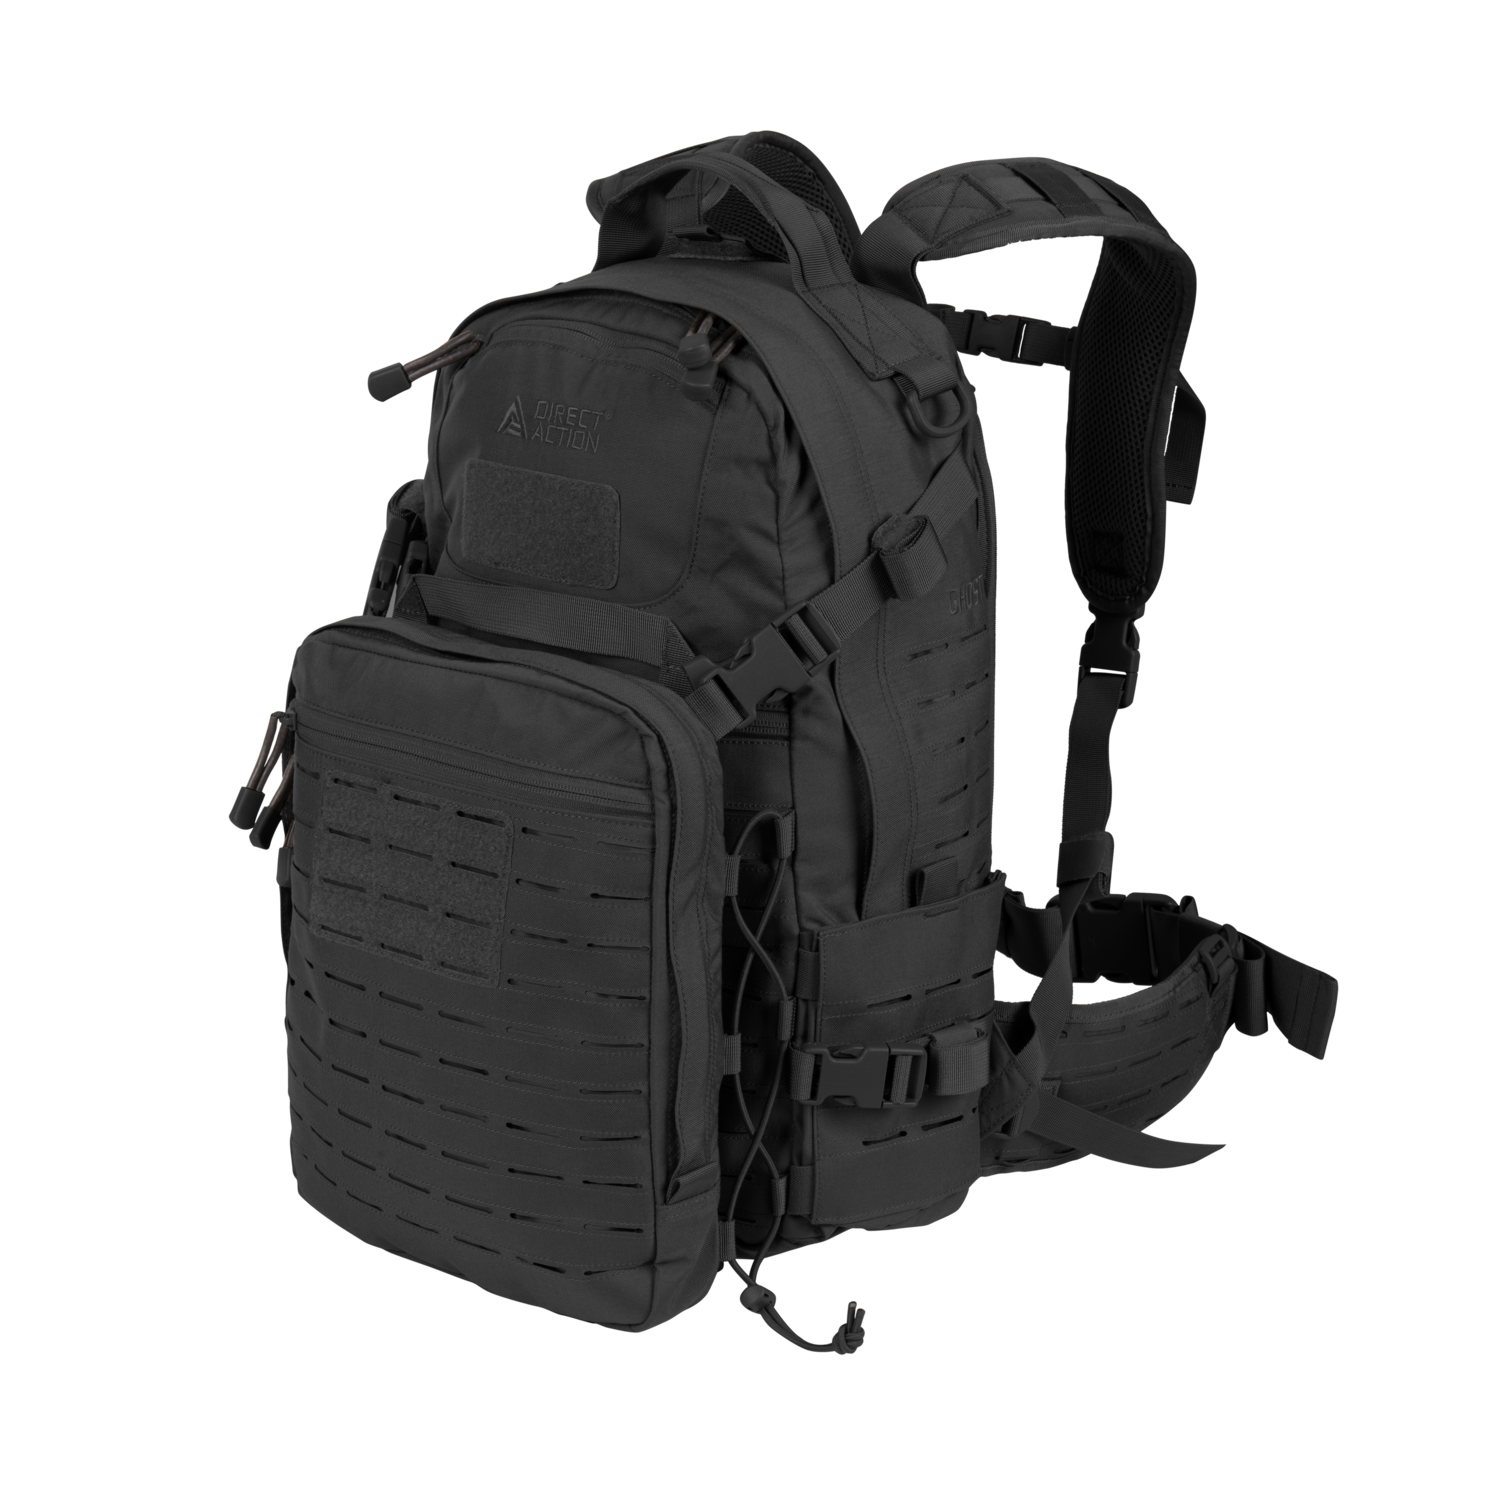 Услуга доставки Рюкзак Direct Action GHOST MK II backpack